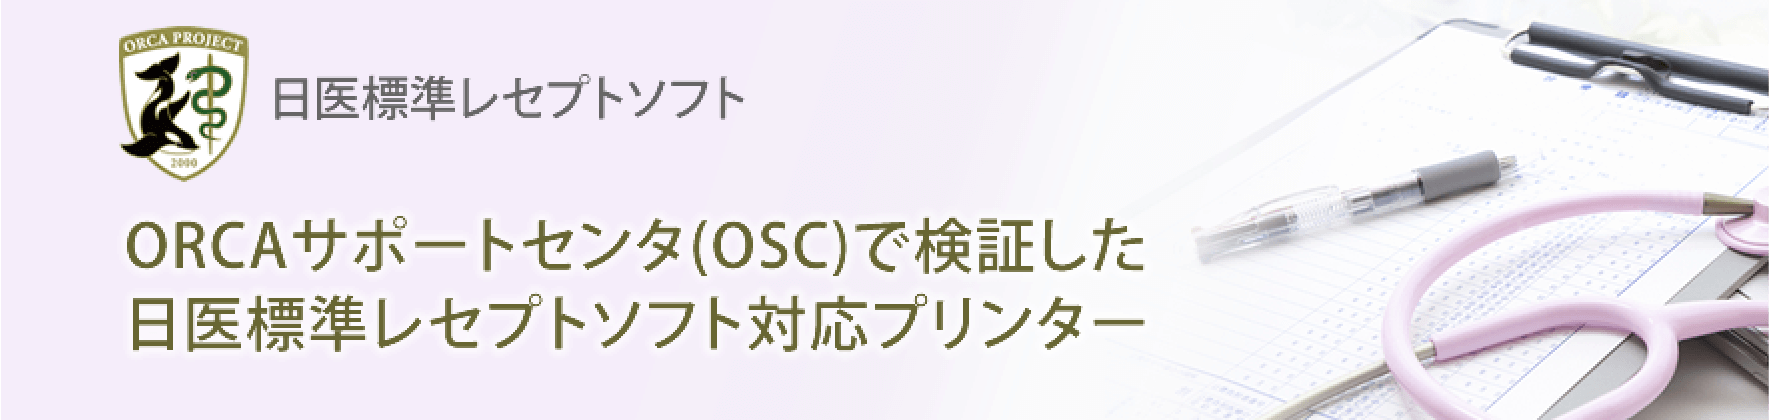 ORCAサポートセンタ(OSC)で検証した日医標準レセプトソフト対応プリンター